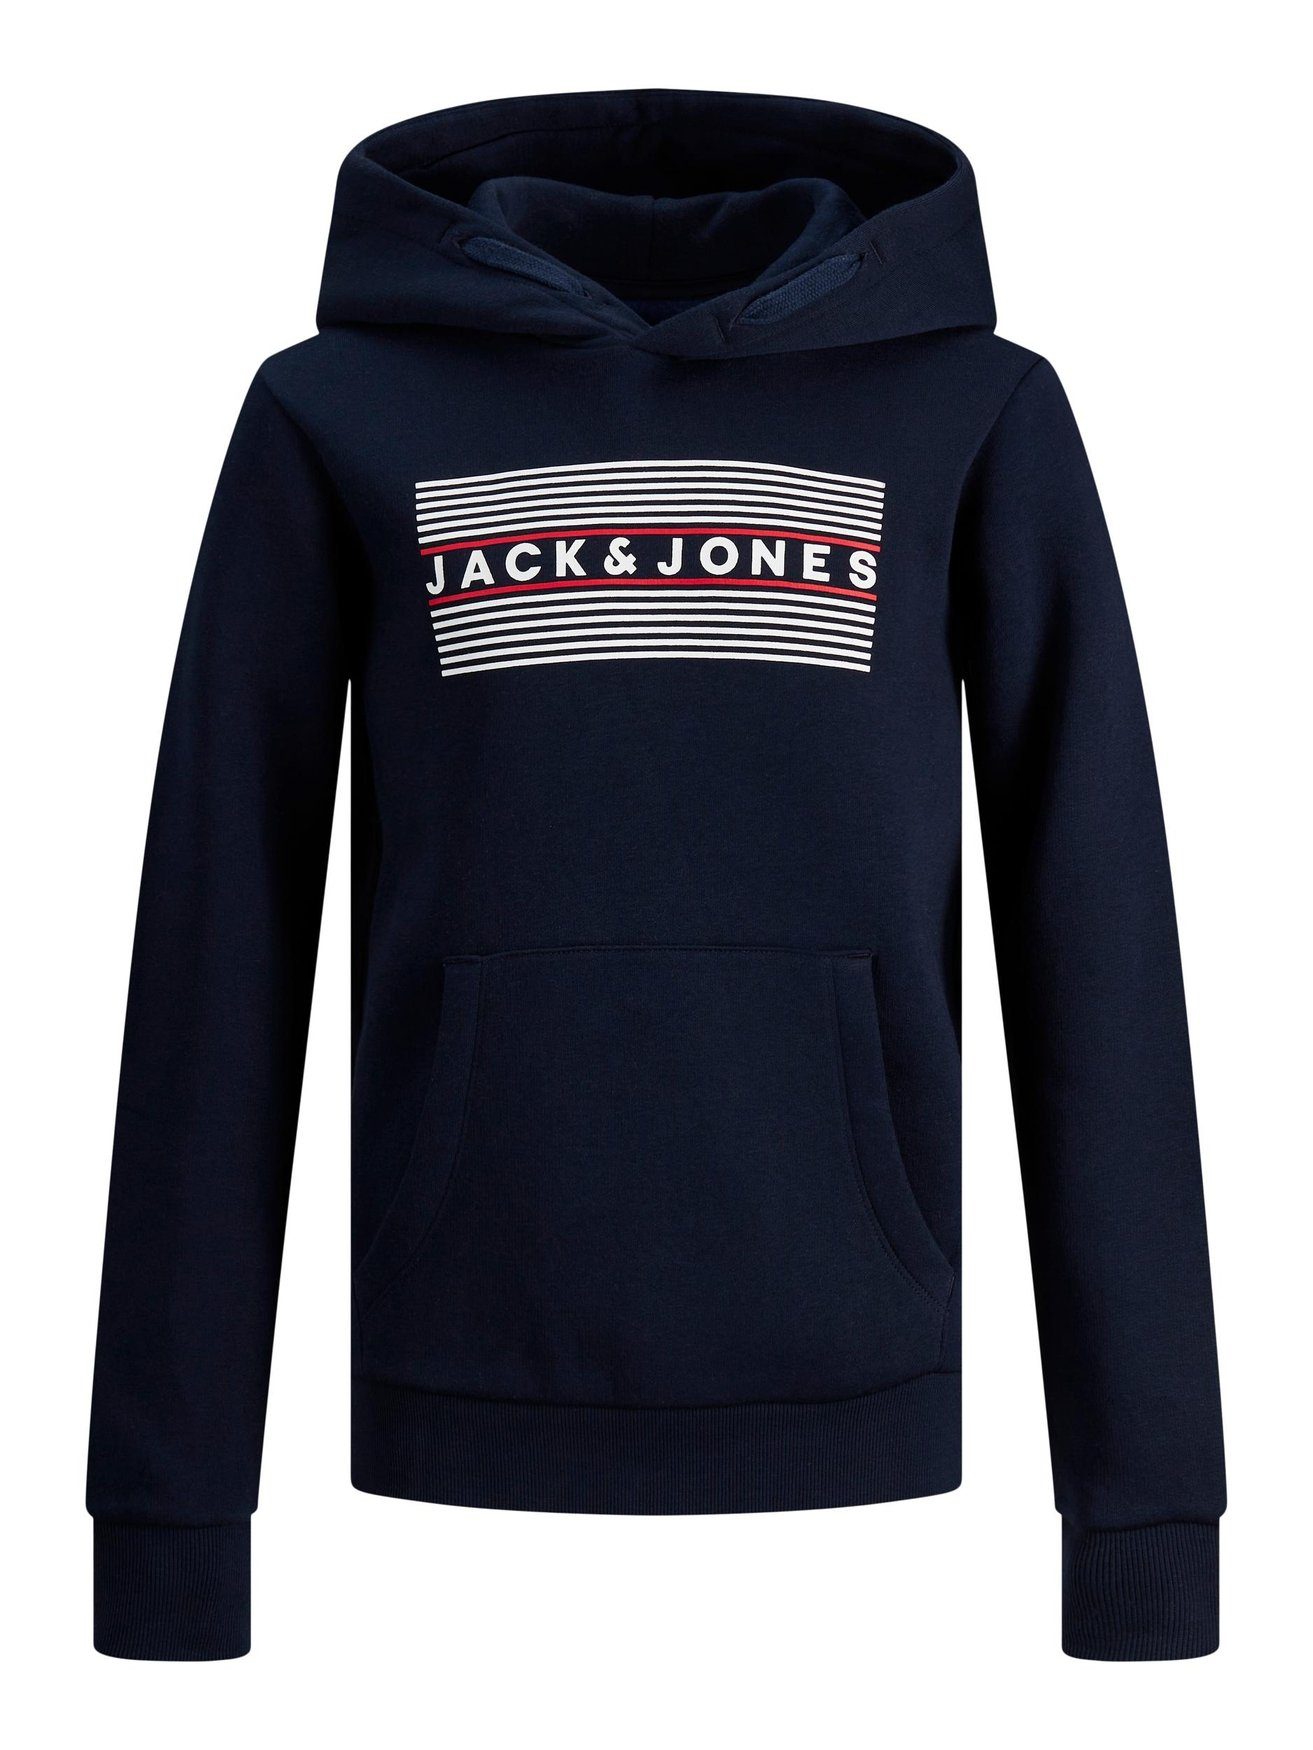 Jack Jones in Hoodie 6502 JJECORP Hoodie Blau Pullover Sweater Kapuzen & Logo